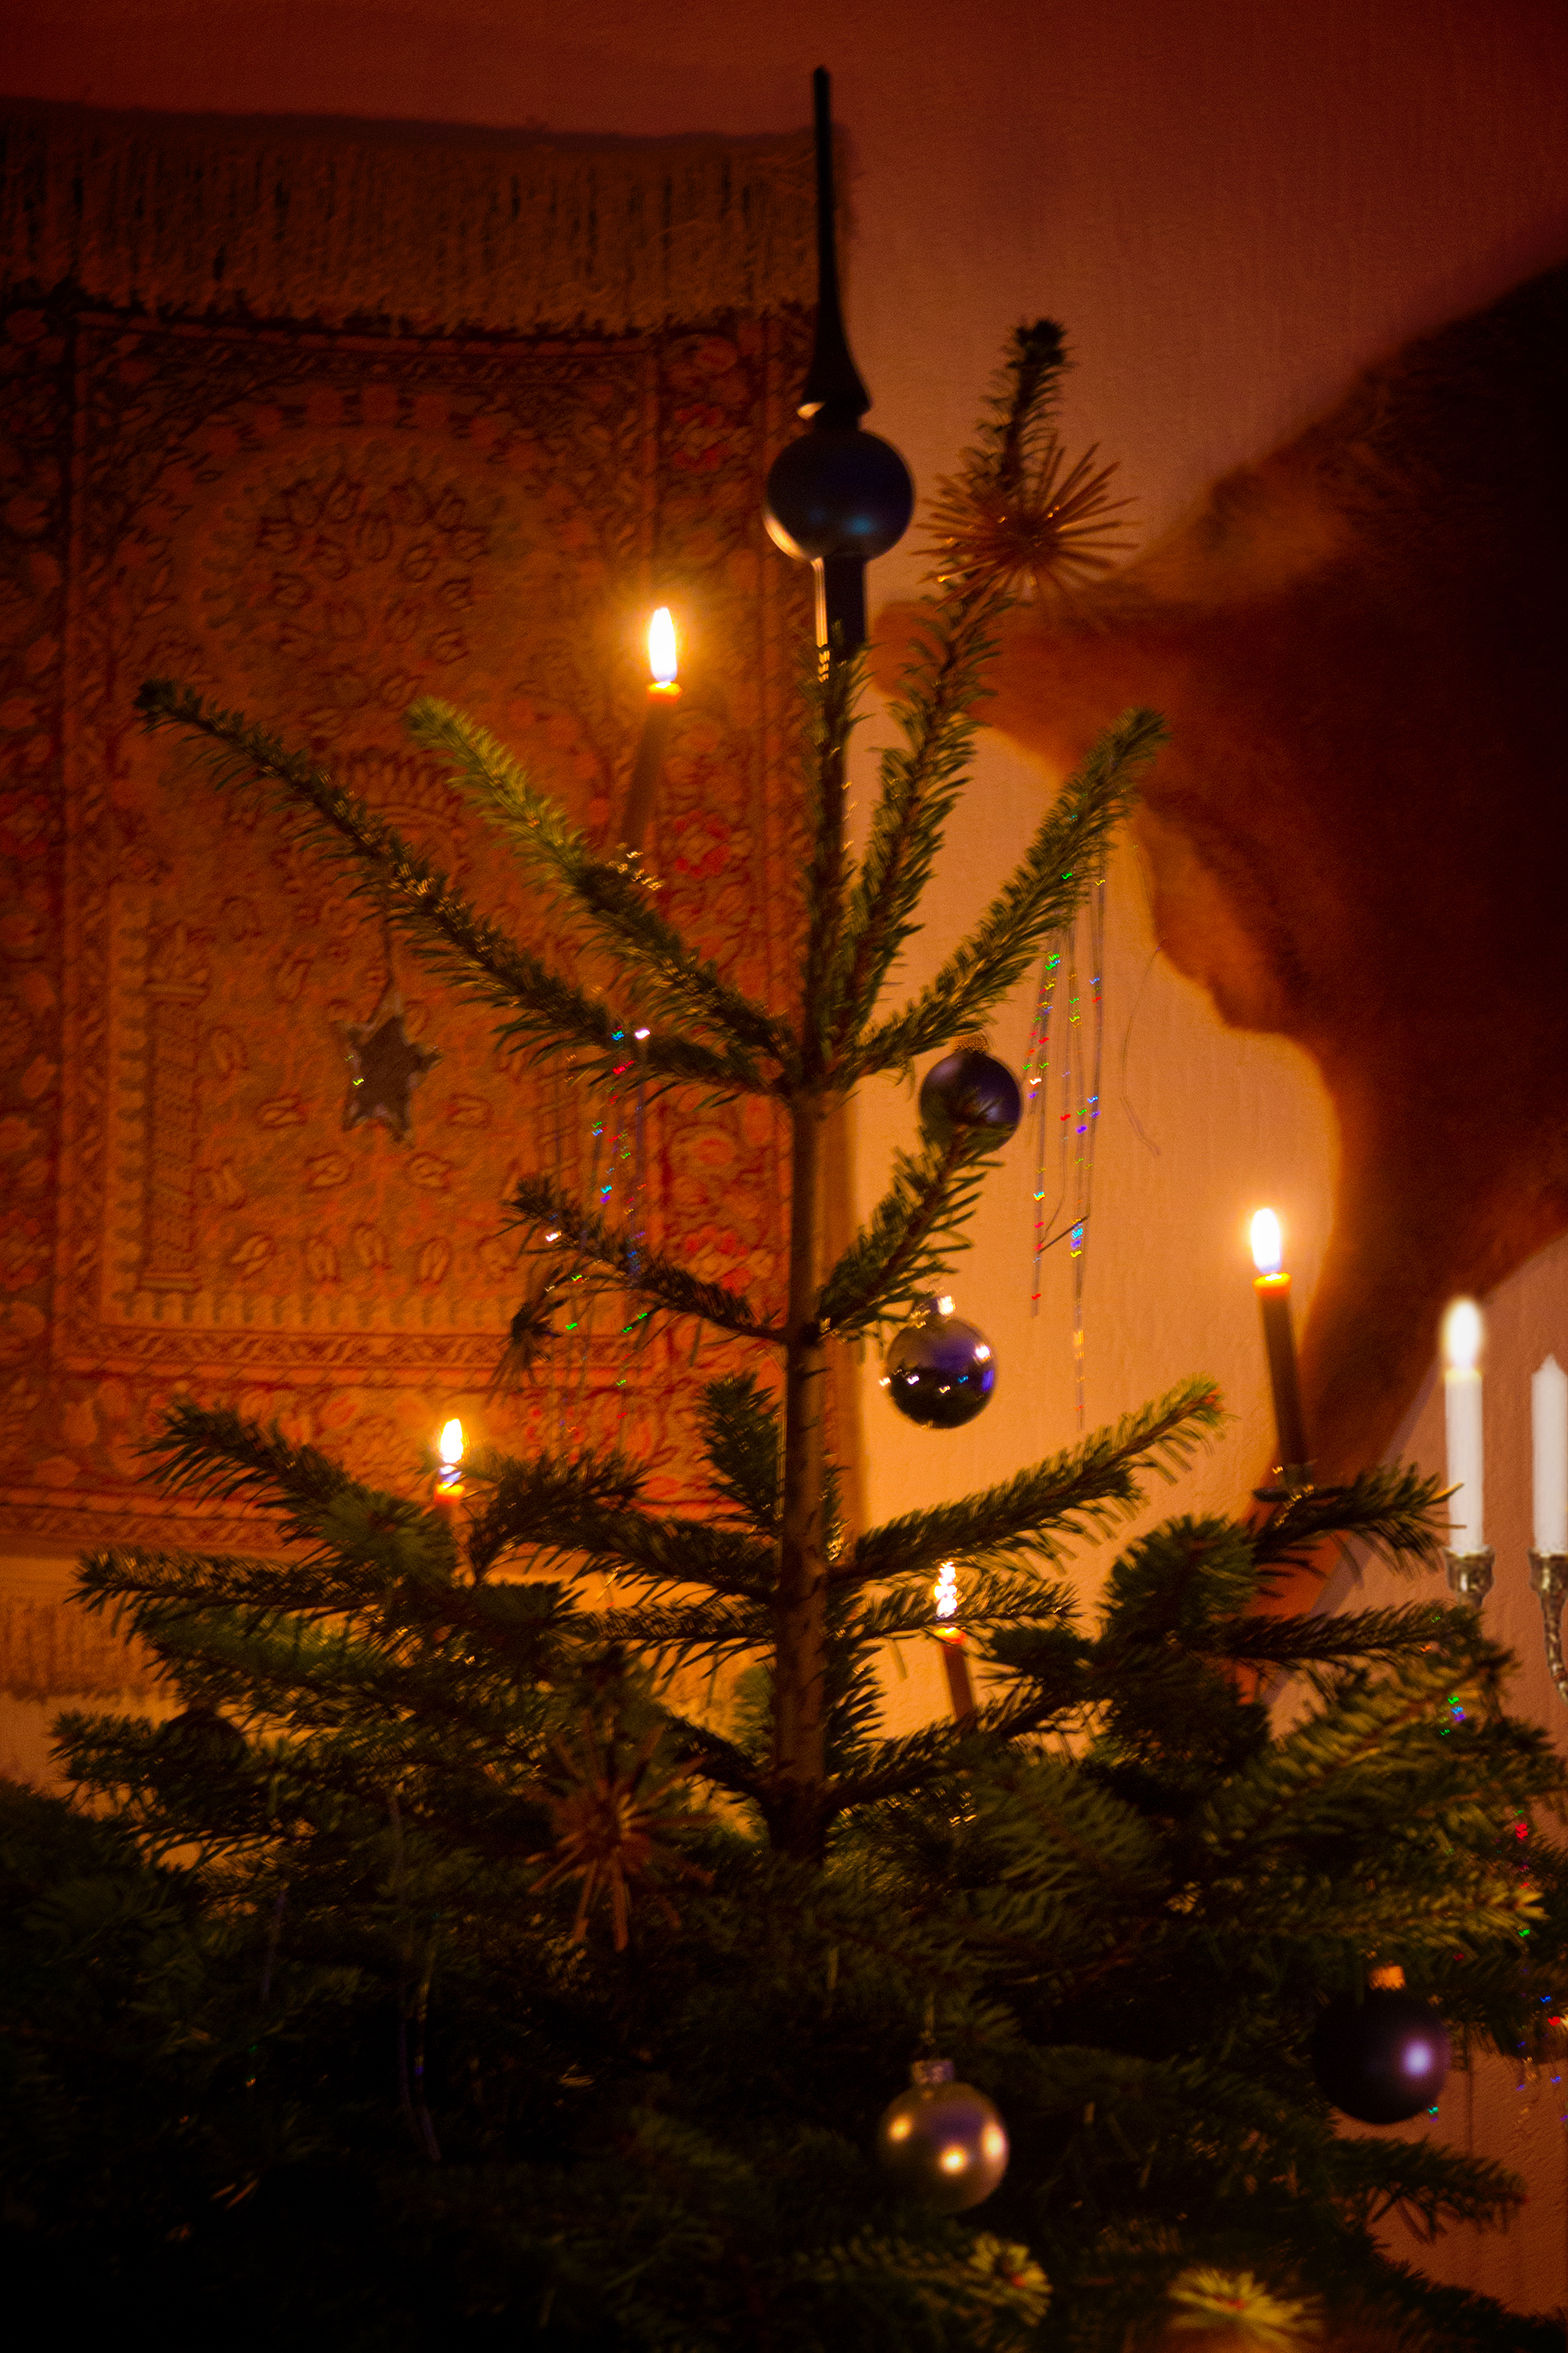 Weihnachtsbaum, Tanne, Schmuck, Gebetsteppich, Minora, Kerzen.